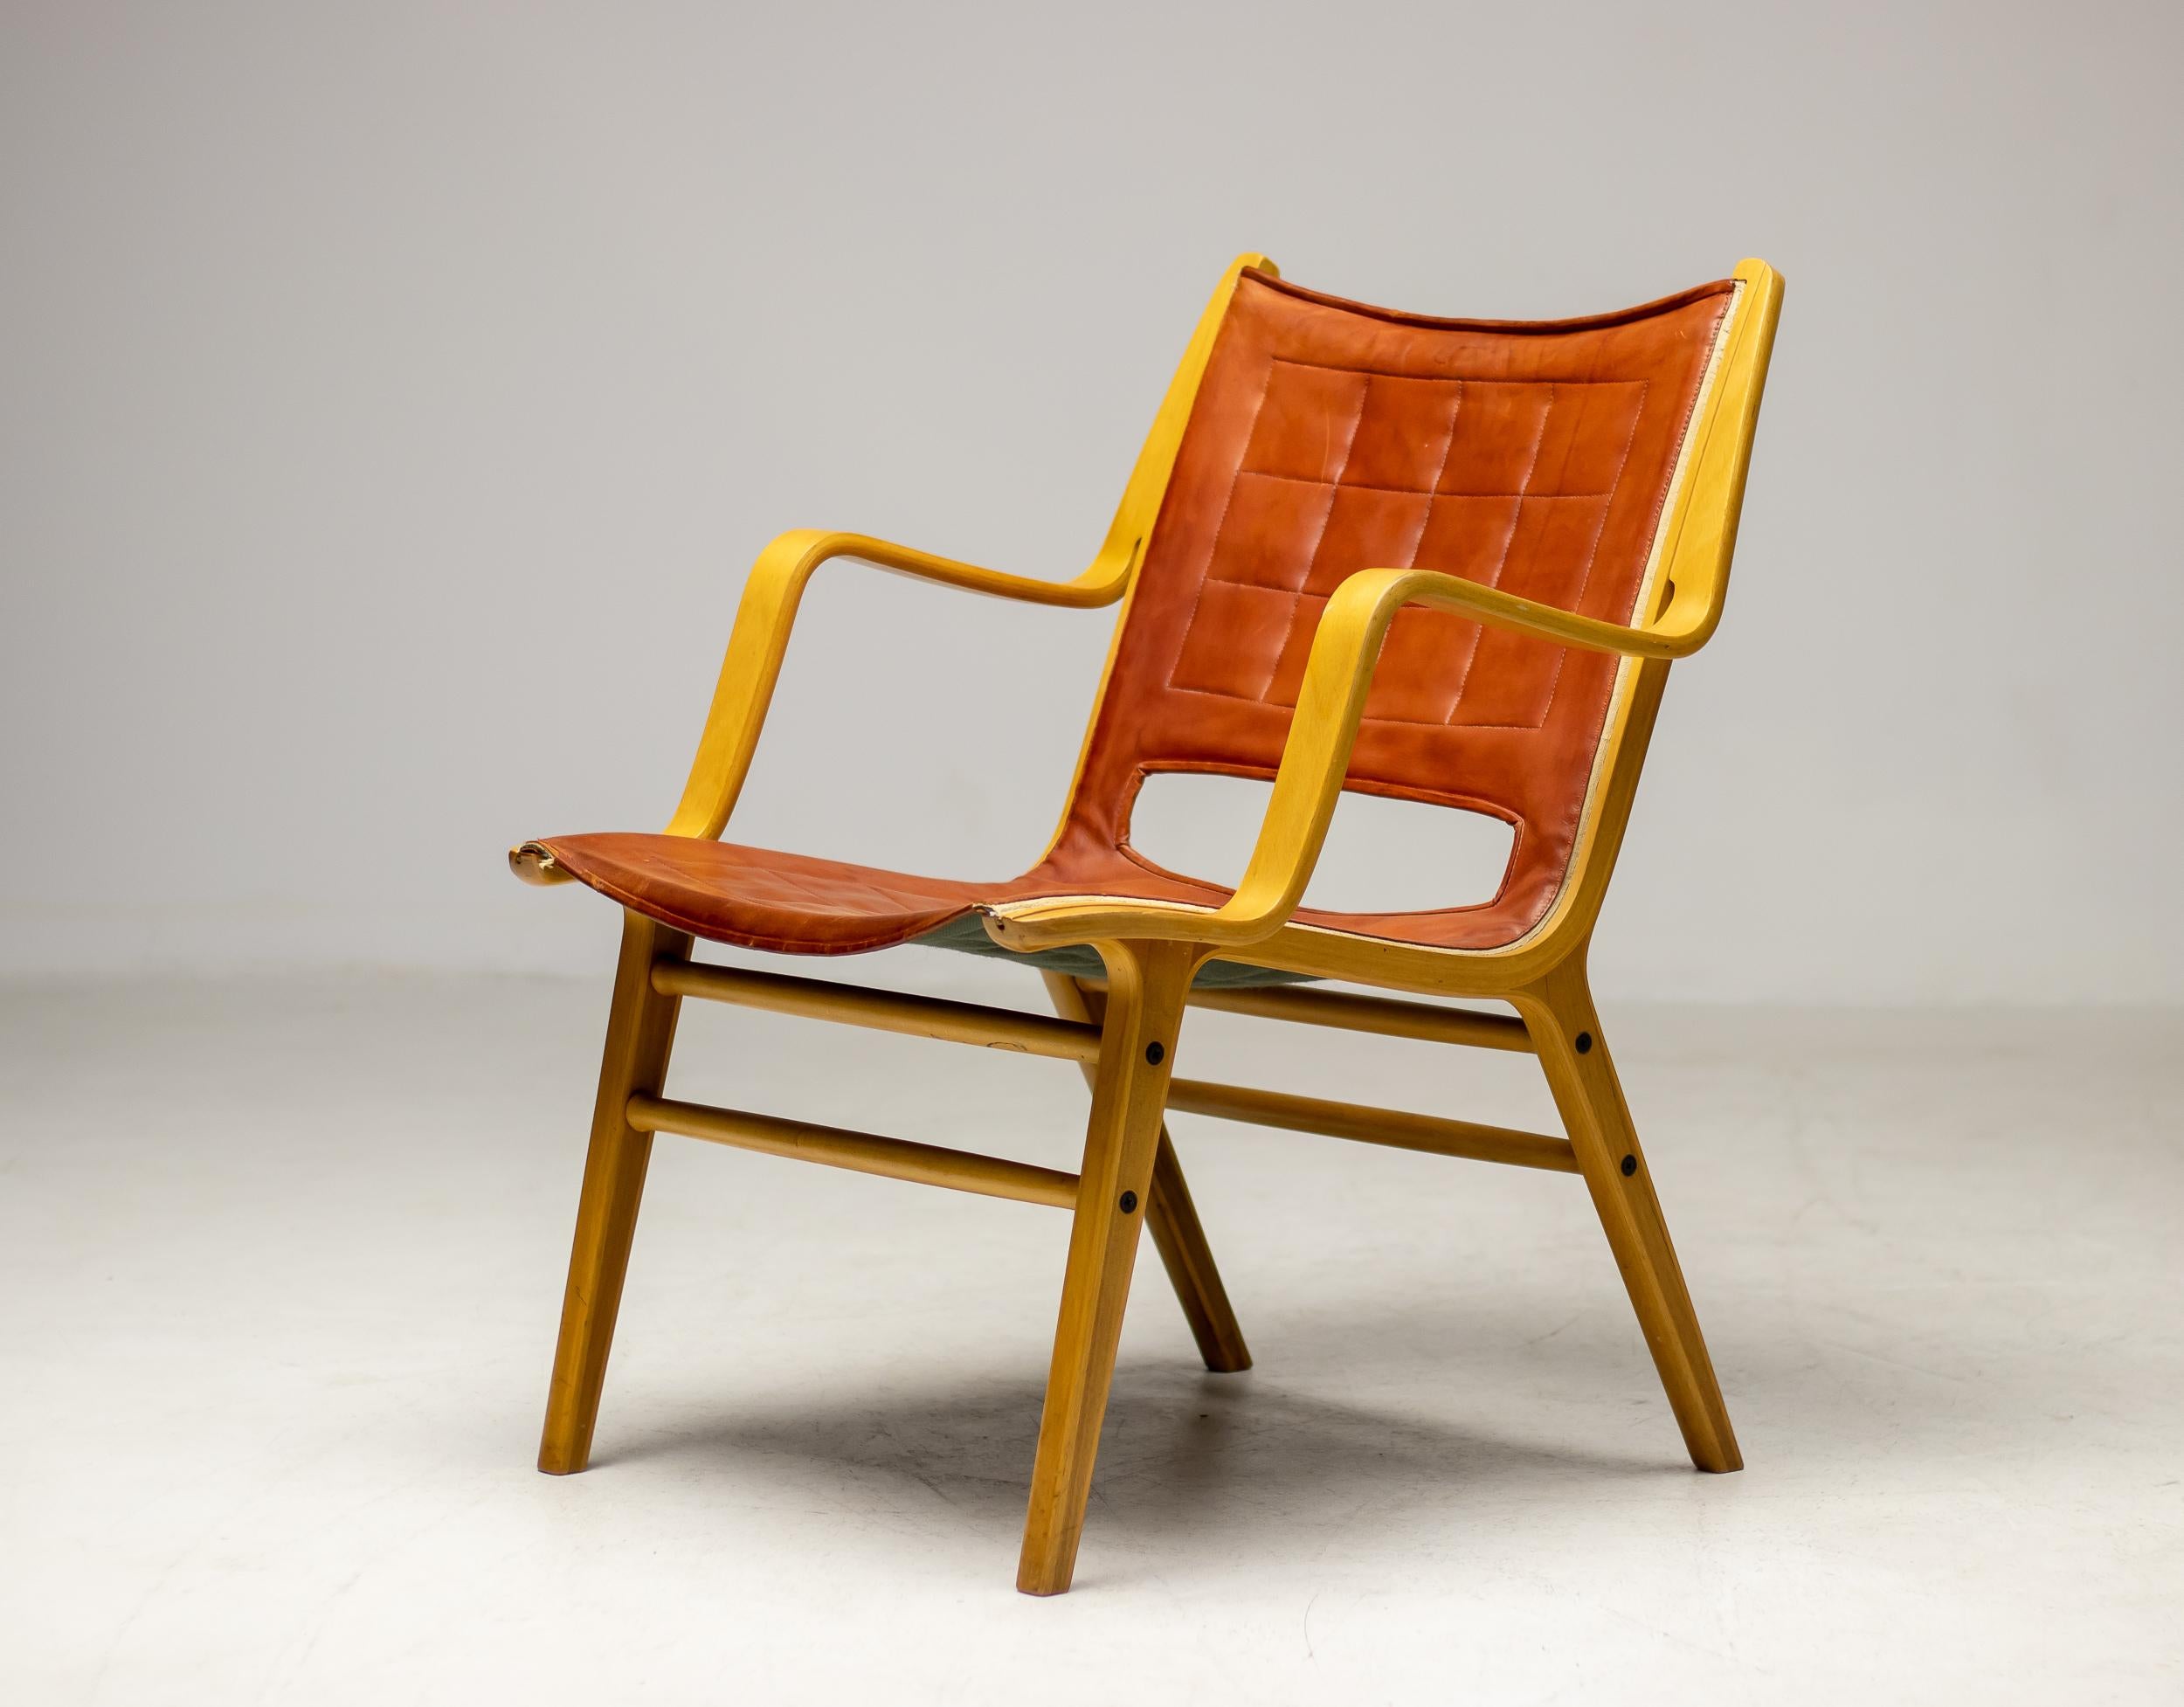 Fauteuil conçu par Peter Hvidt et Orla Mølgaard-Nielsen et produit en 1963 par Fritz Hansen, Danemark.  La chaise est façonnée en bois de hêtre stratifié, l'assise est recouverte de cuir cognac d'origine. Les pieds sont en teck. Labellisé FH.
Un